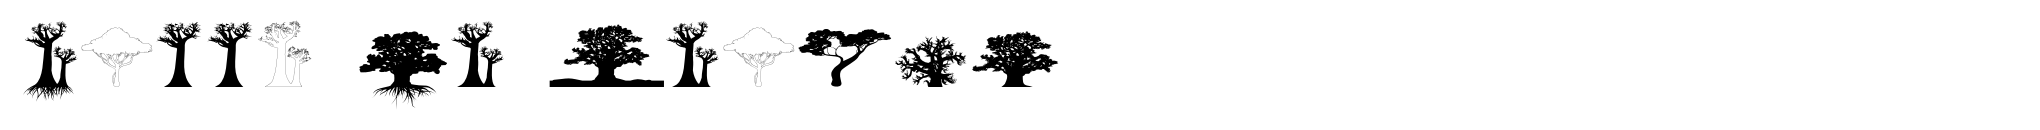 Bäume von Afrika Bild